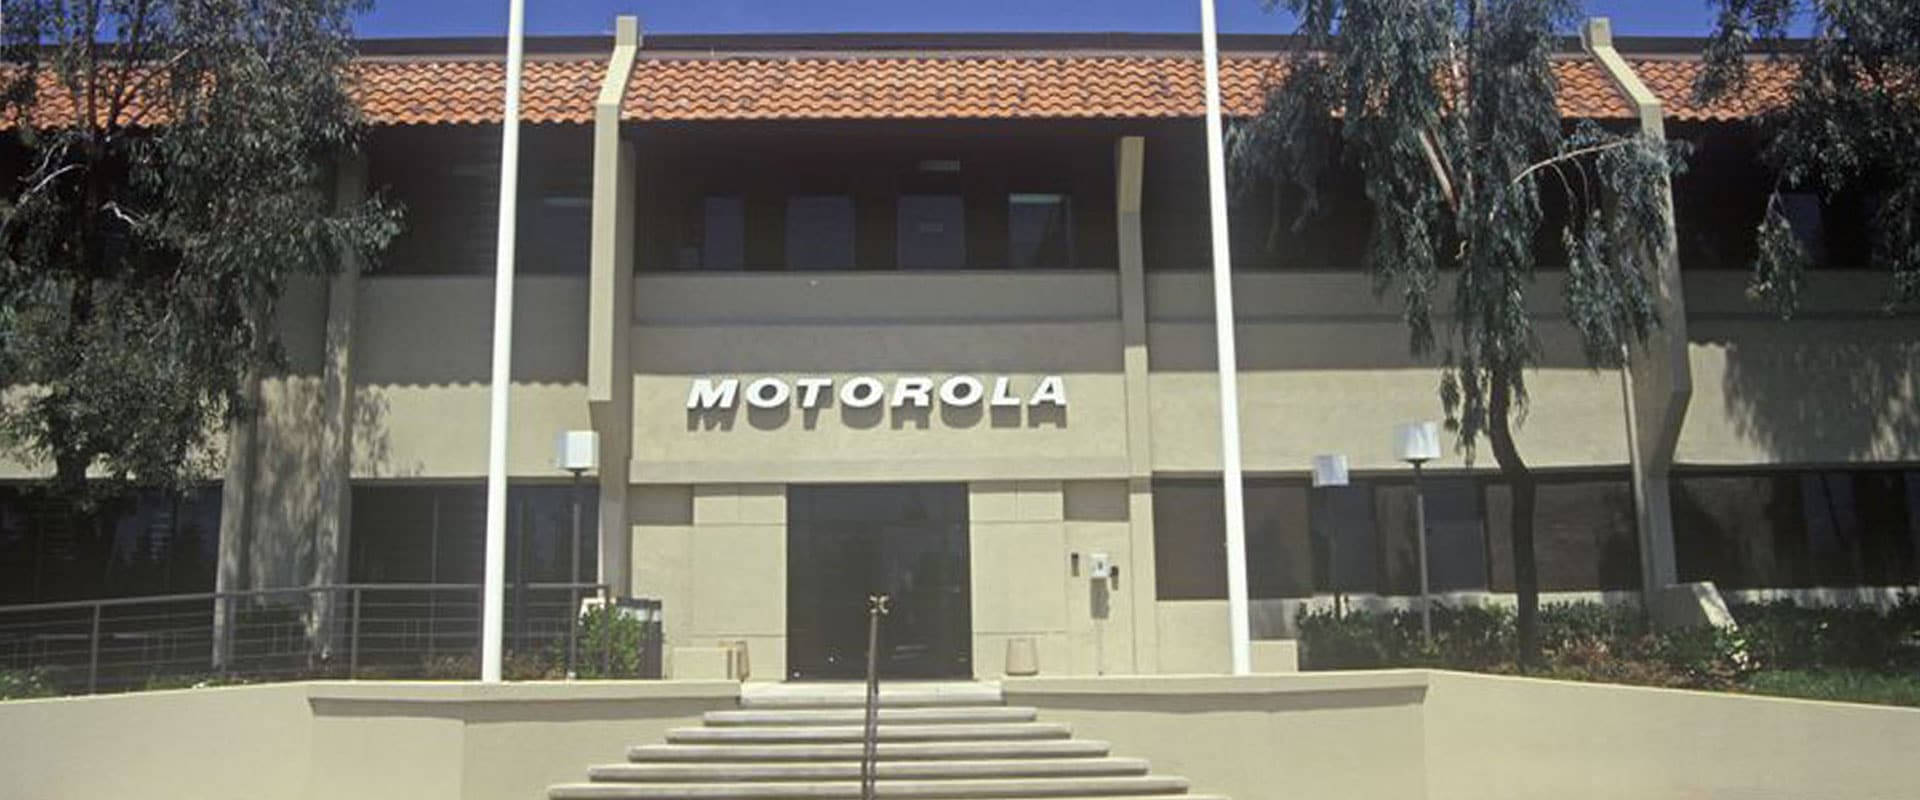 Motorola Facility